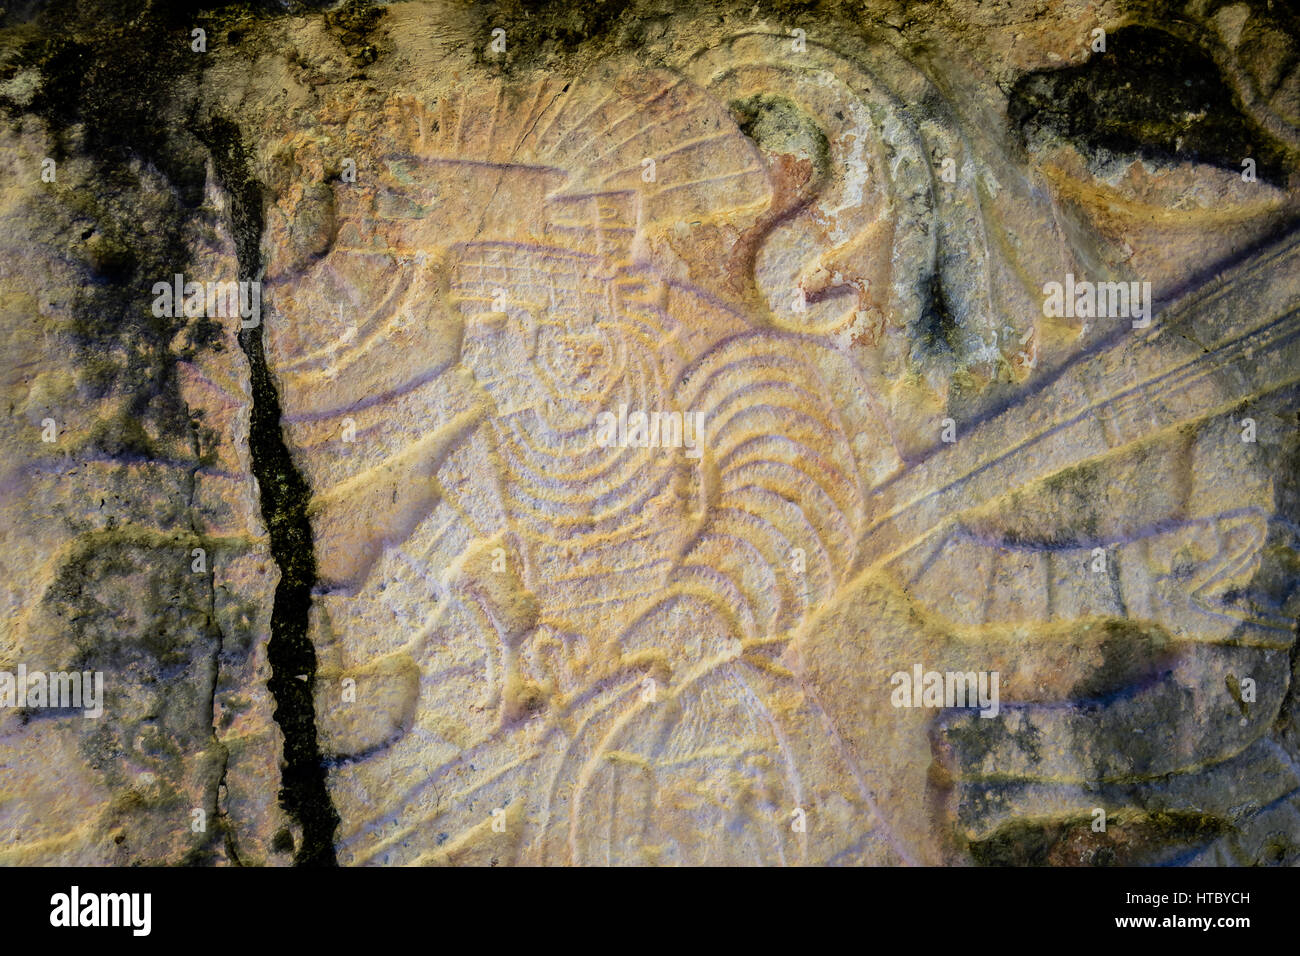 Schnitzereien in der Venus-Plattform an der alten Maya-Ruinen von Chichen Itza - Yucatan, Mexiko Stockfoto